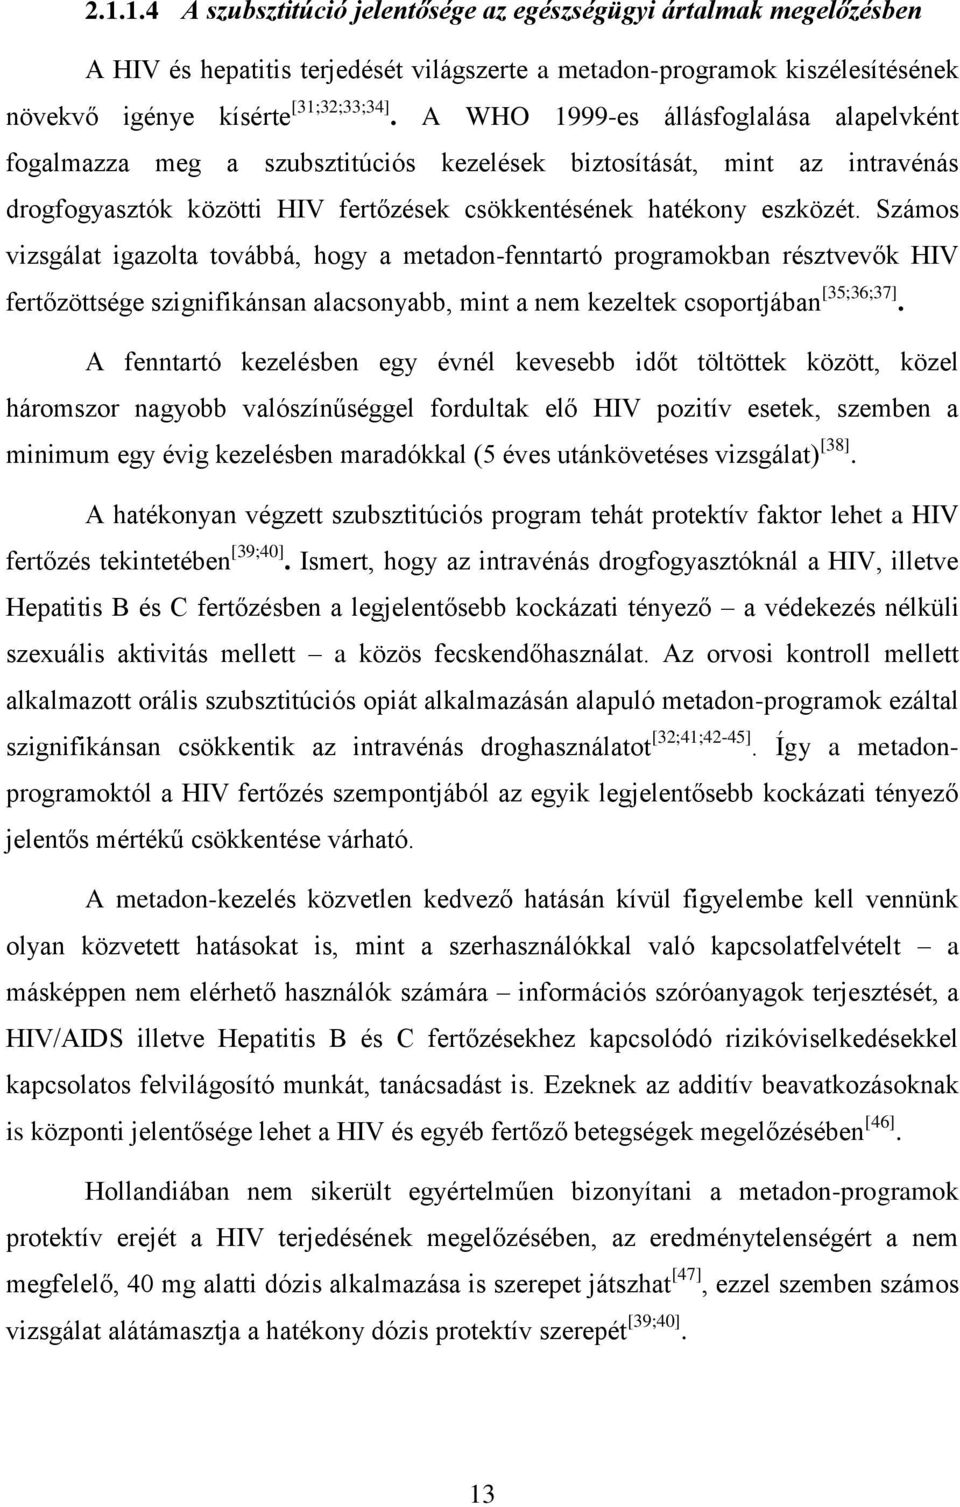 Számos vizsgálat igazolta továbbá, hogy a metadon-fenntartó programokban résztvevők HIV fertőzöttsége szignifikánsan alacsonyabb, mint a nem kezeltek csoportjában [35;36;37].